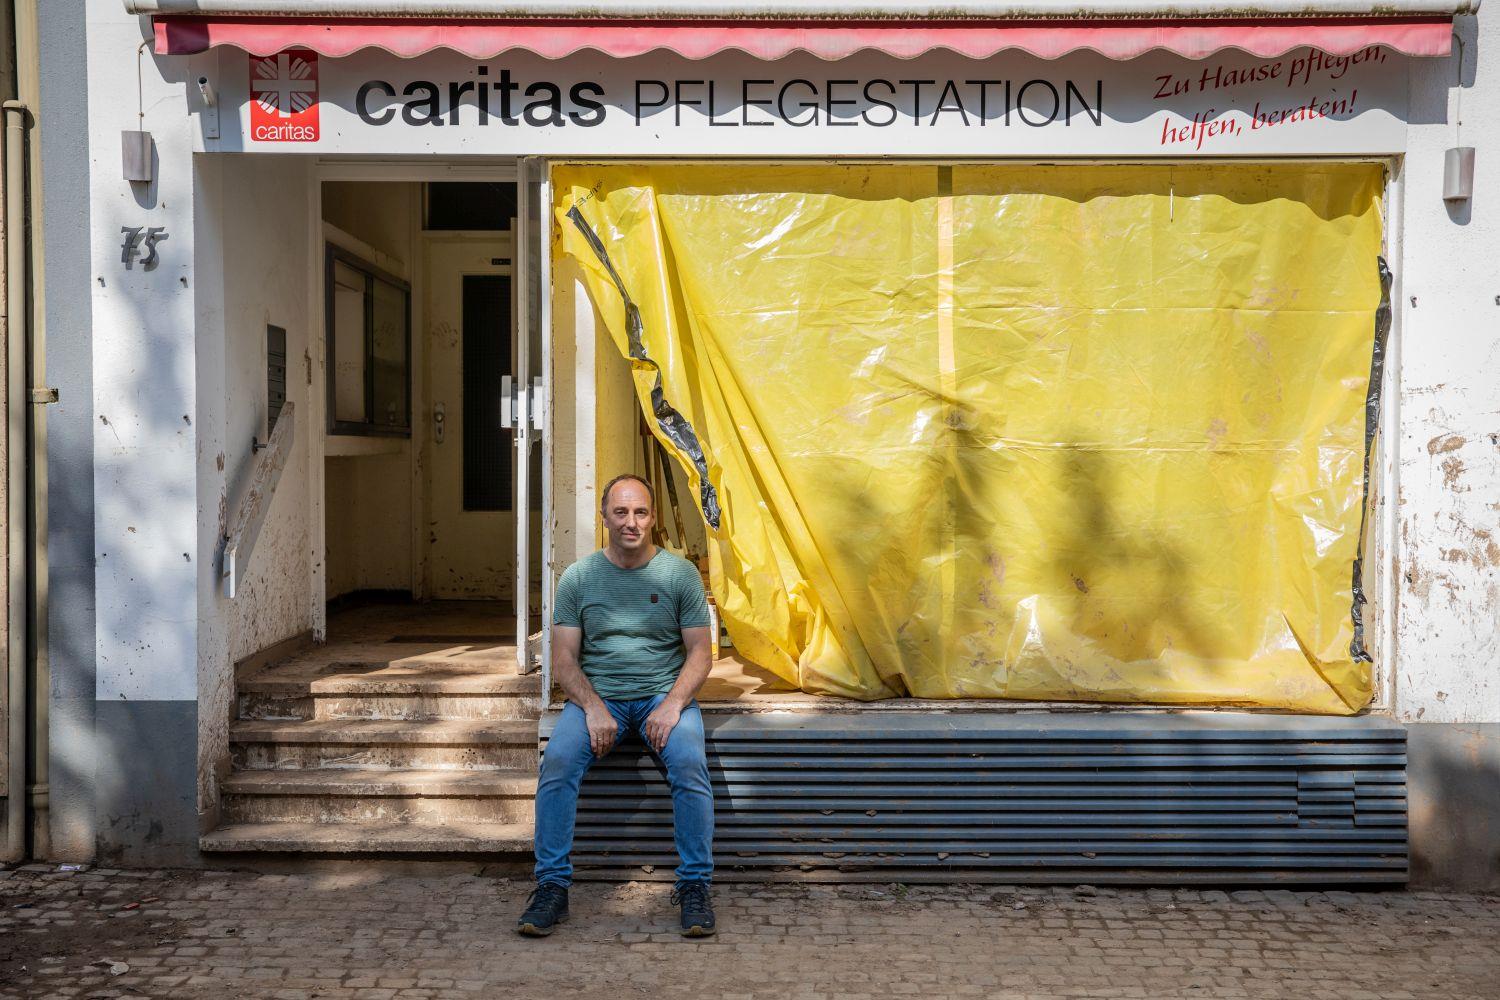 Pflegestations-Leiter Olzem vor der Caritas-Einrichtung, die von Flut und Hochwasser zerstört wurde.